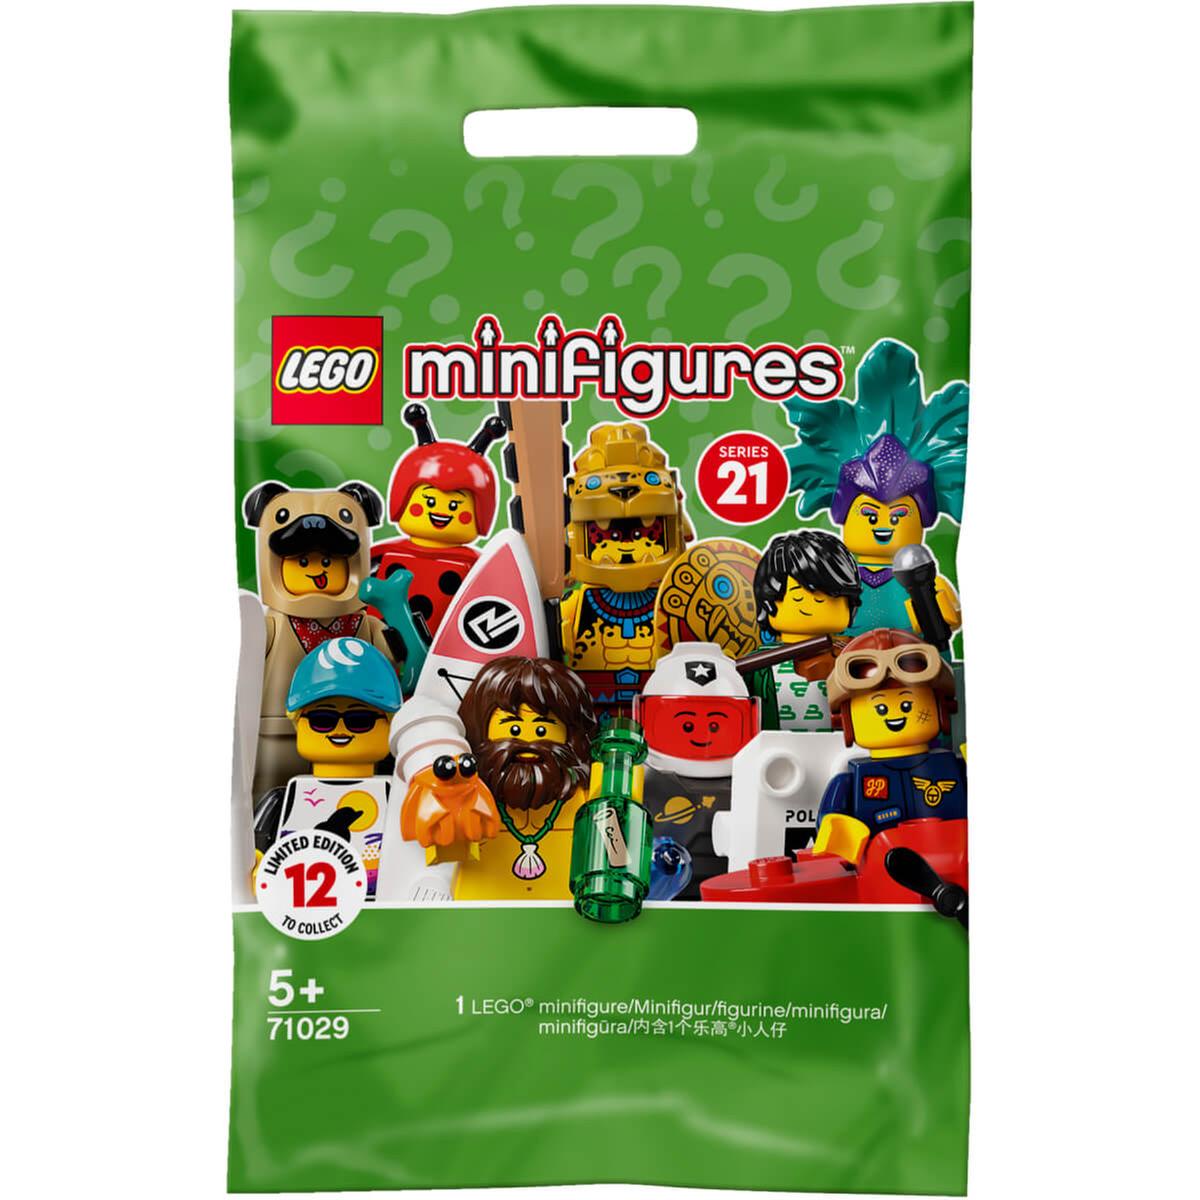 LEGO Minifigures - Minifiguras Série 21 - 71029 (vários modelos) | LEGO  MINI FIGURAS | Loja de brinquedos e videojogos Online Toysrus